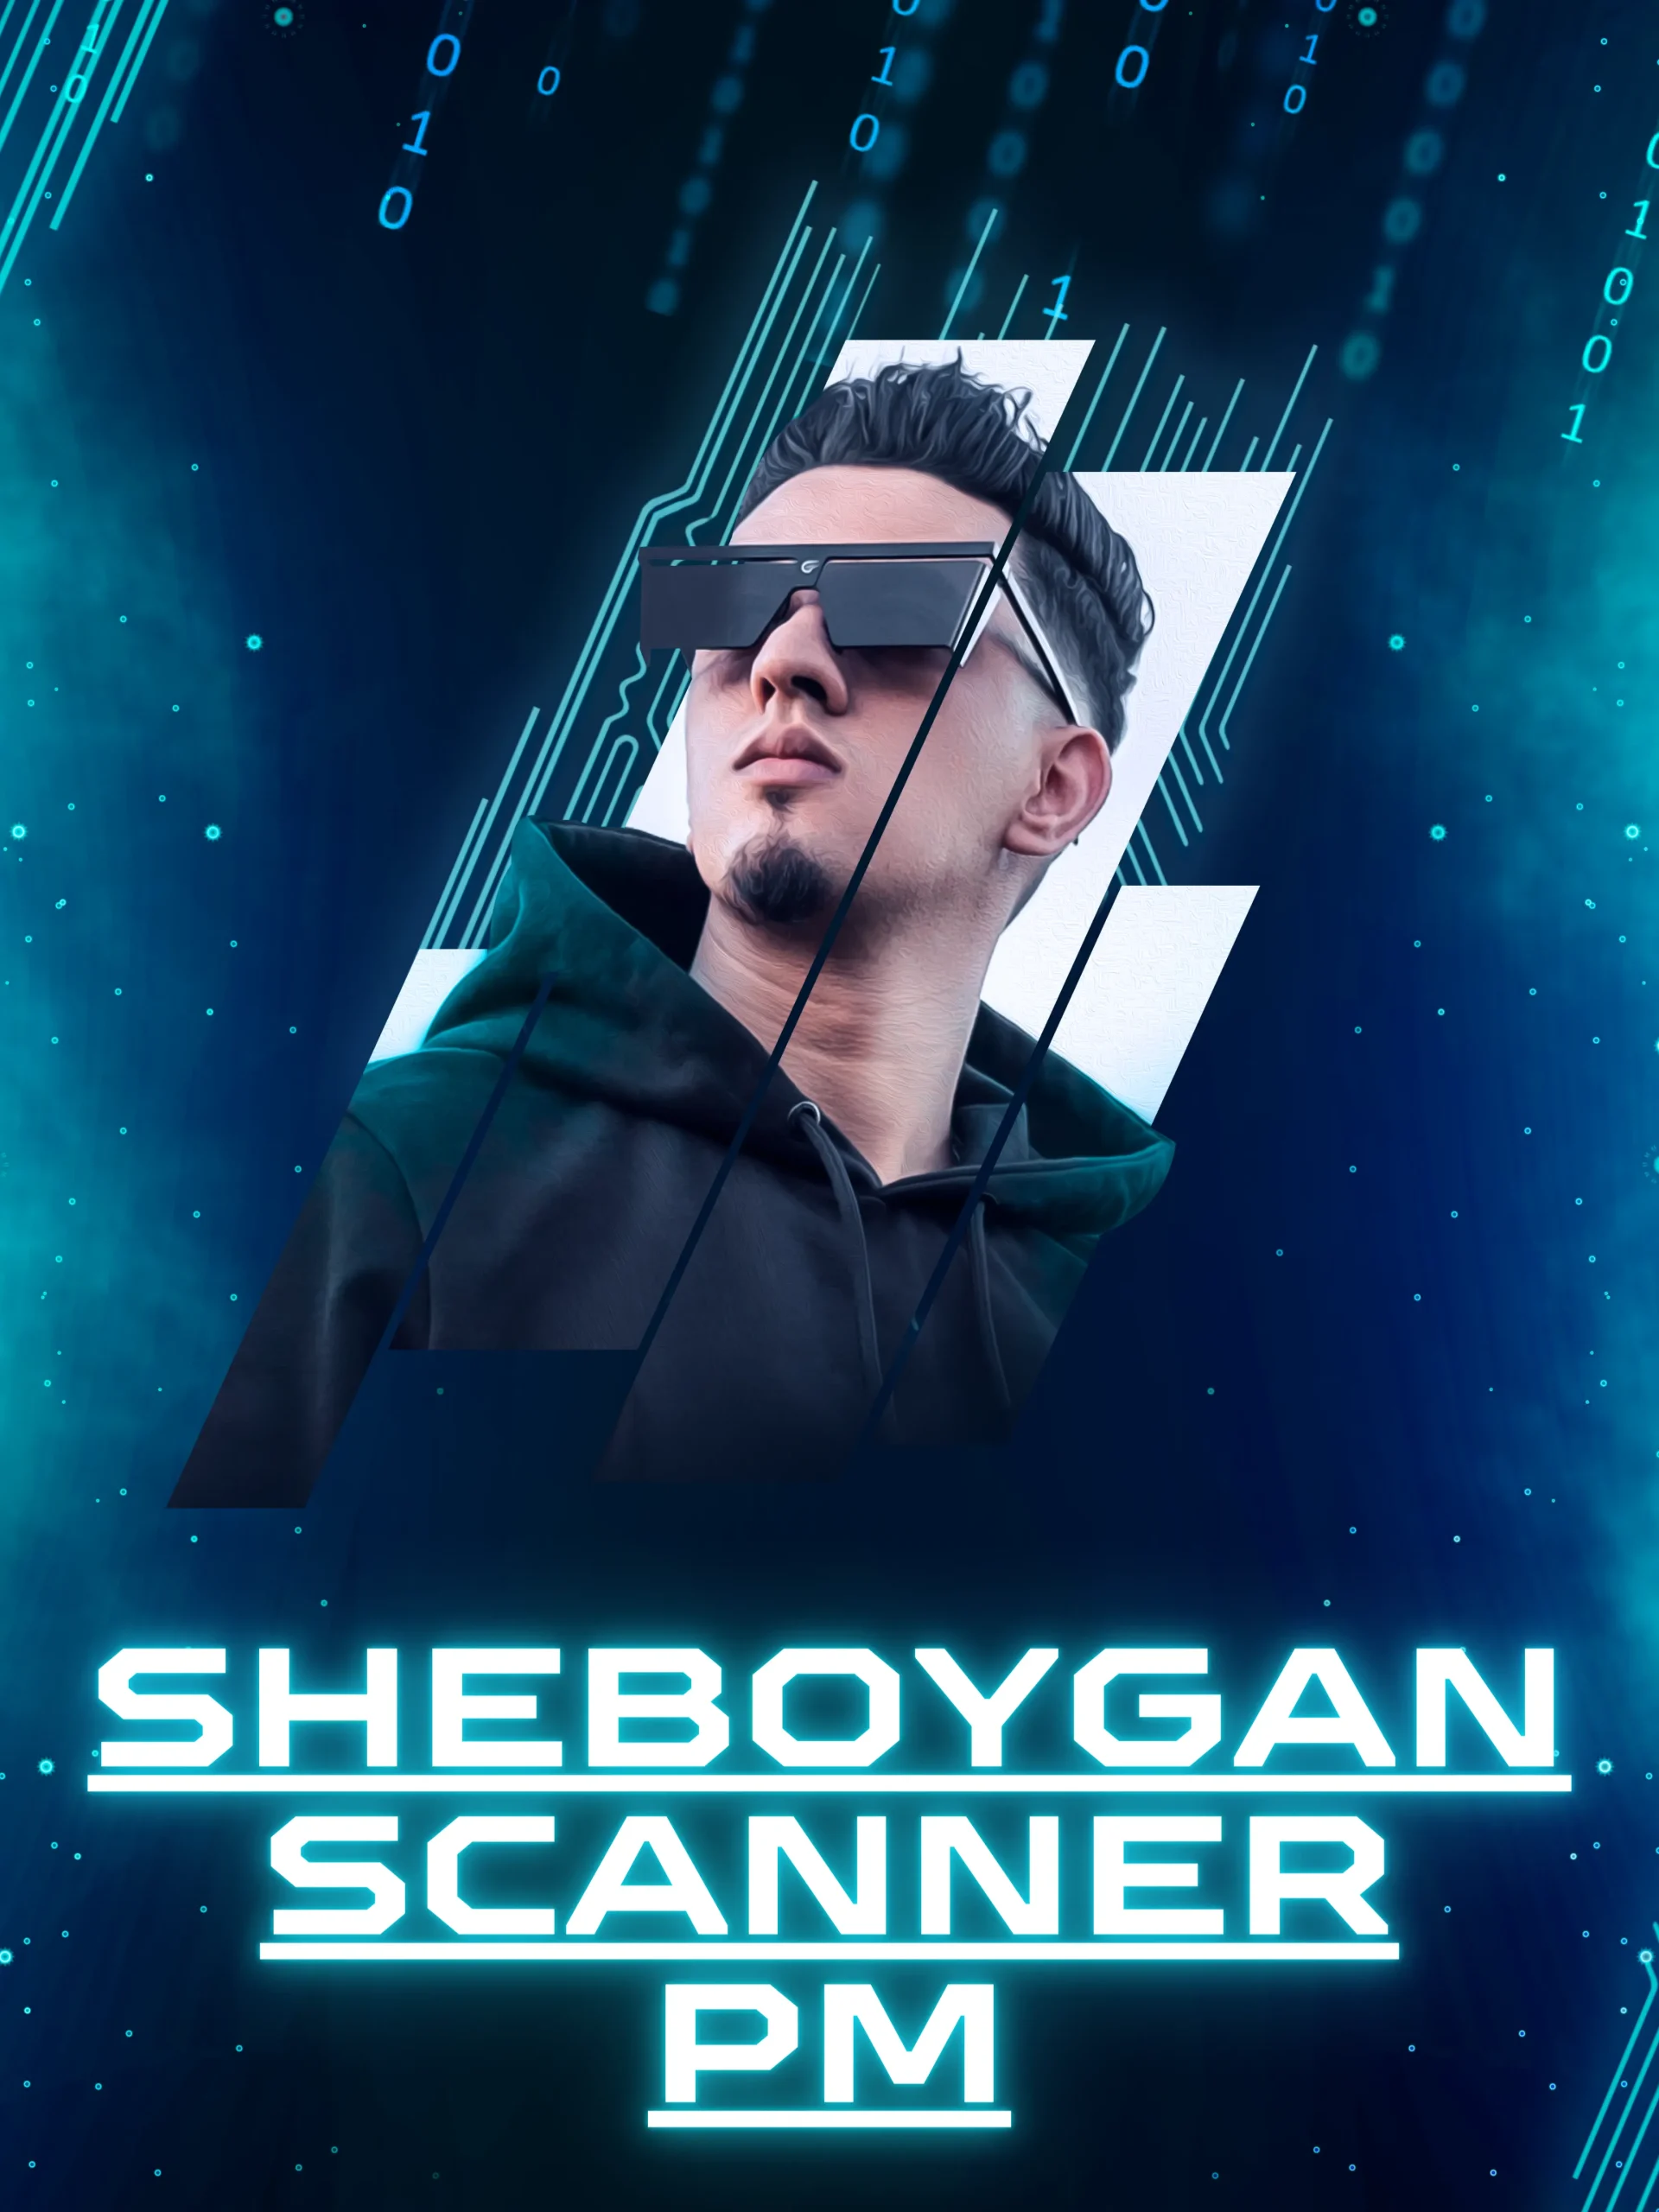 Sheboygan Scanner PM